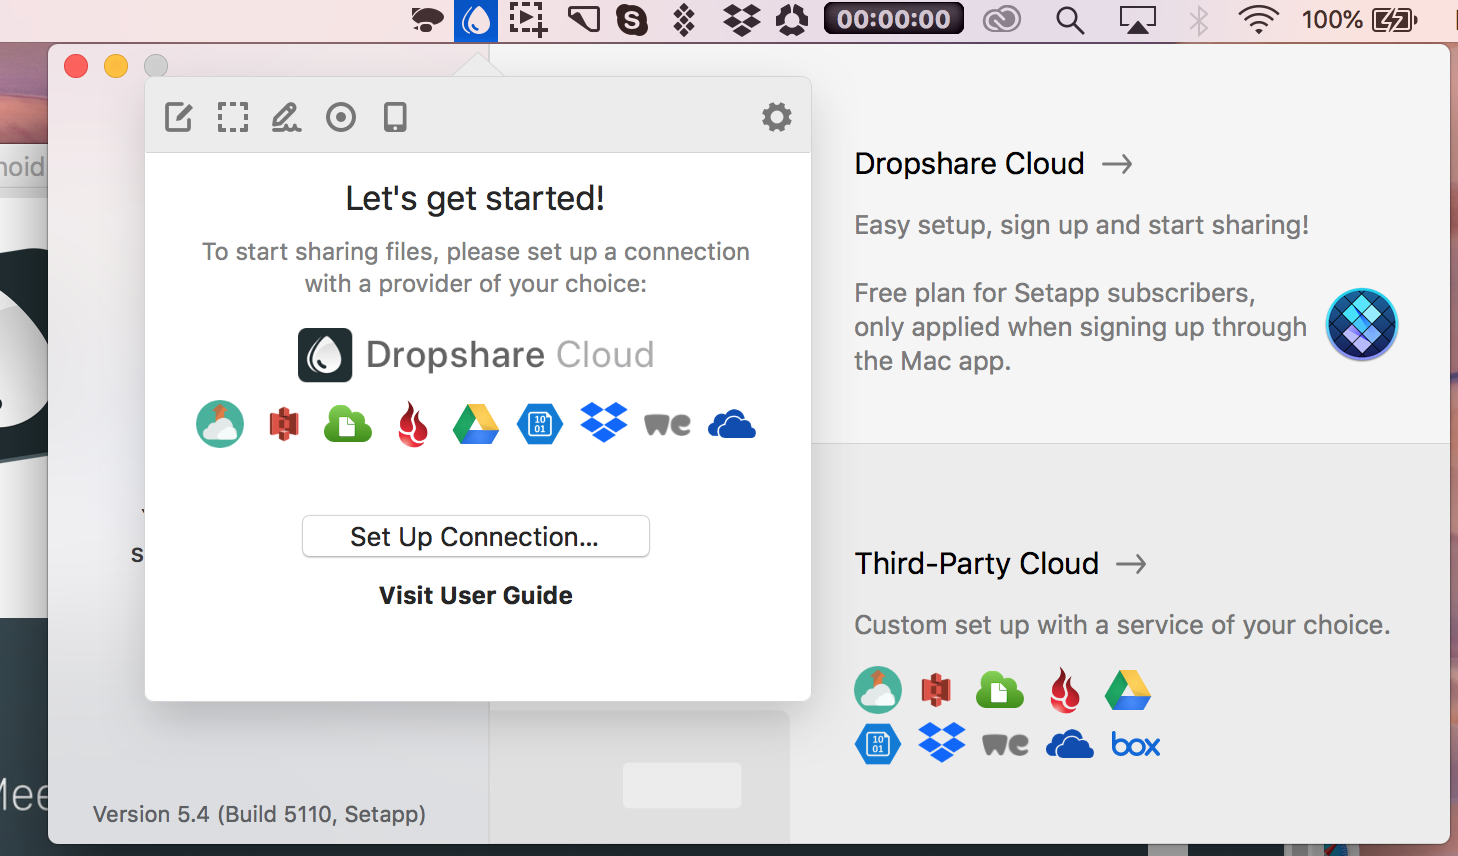  Laden Sie Screenshots mit der Dropshare-App in den Cloud-Speicher hoch